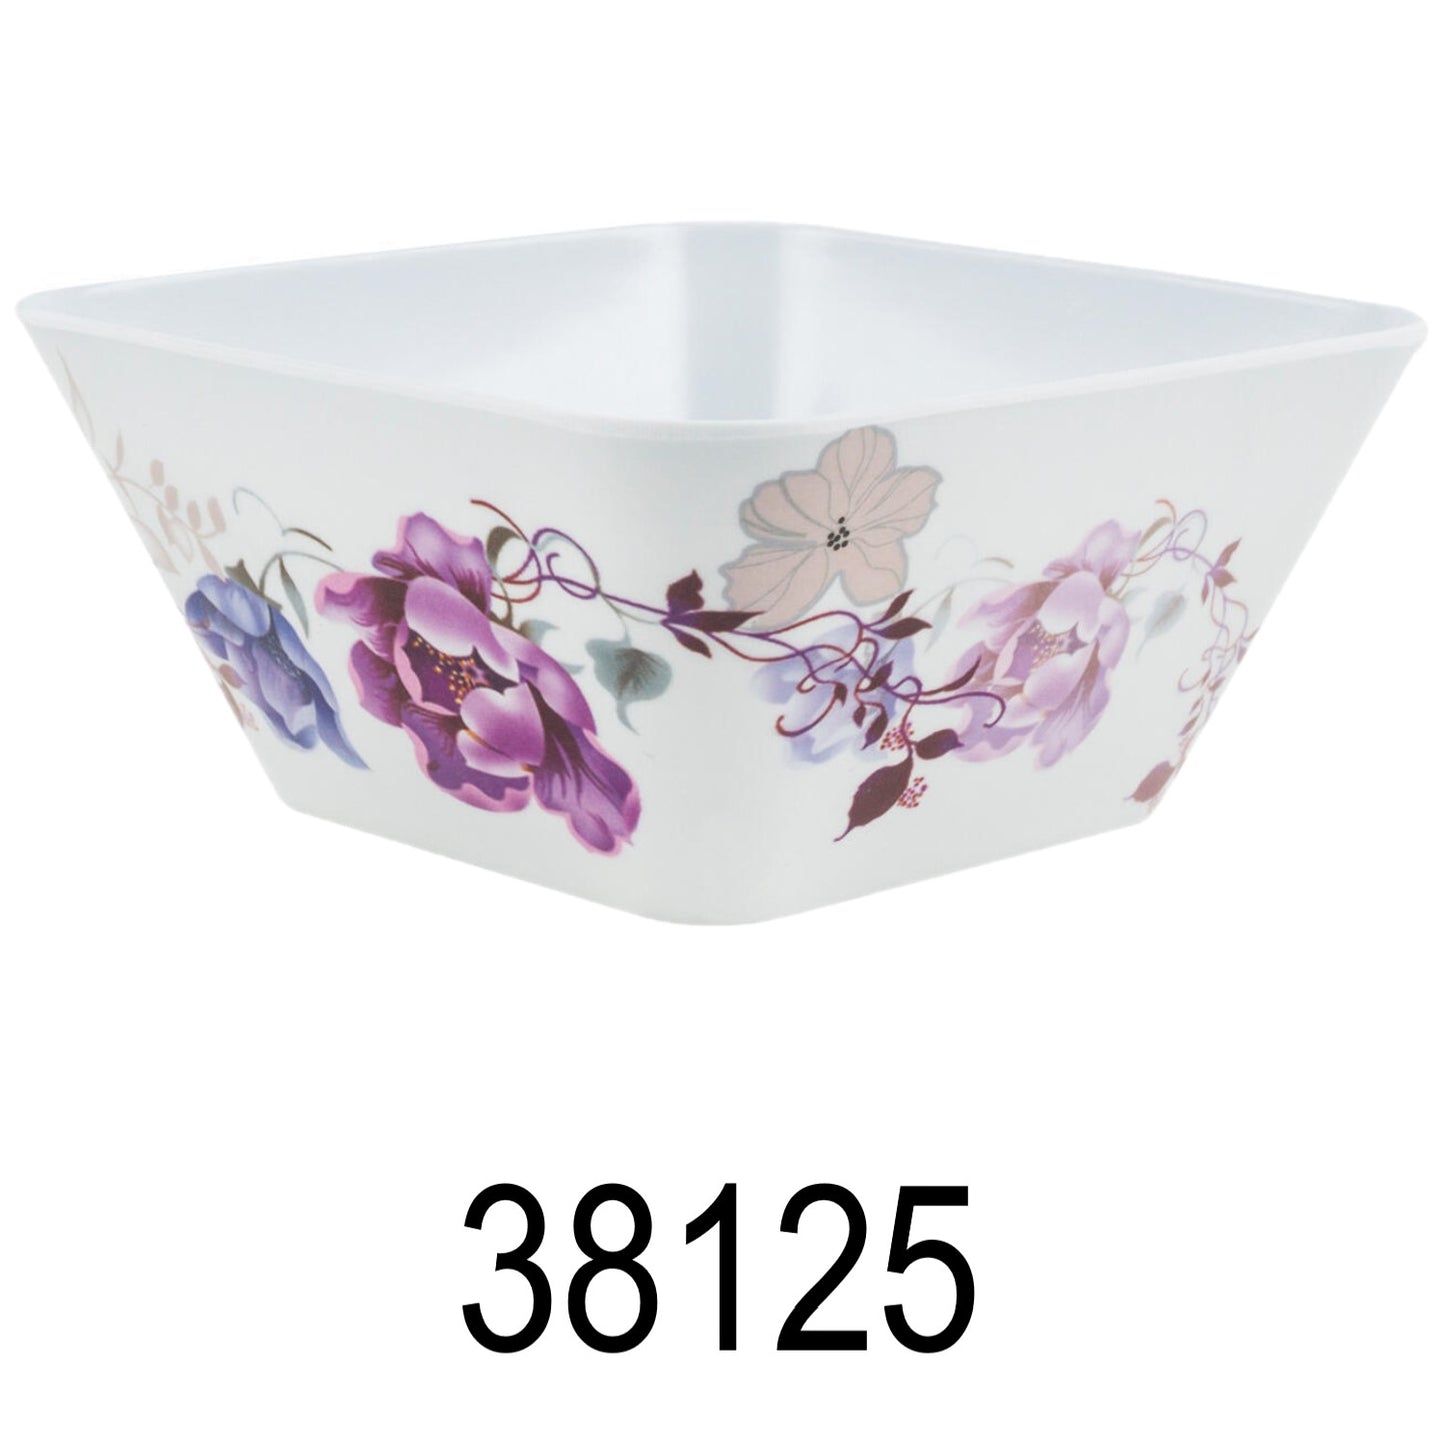 1 PC 15cm Square Floral Bowl